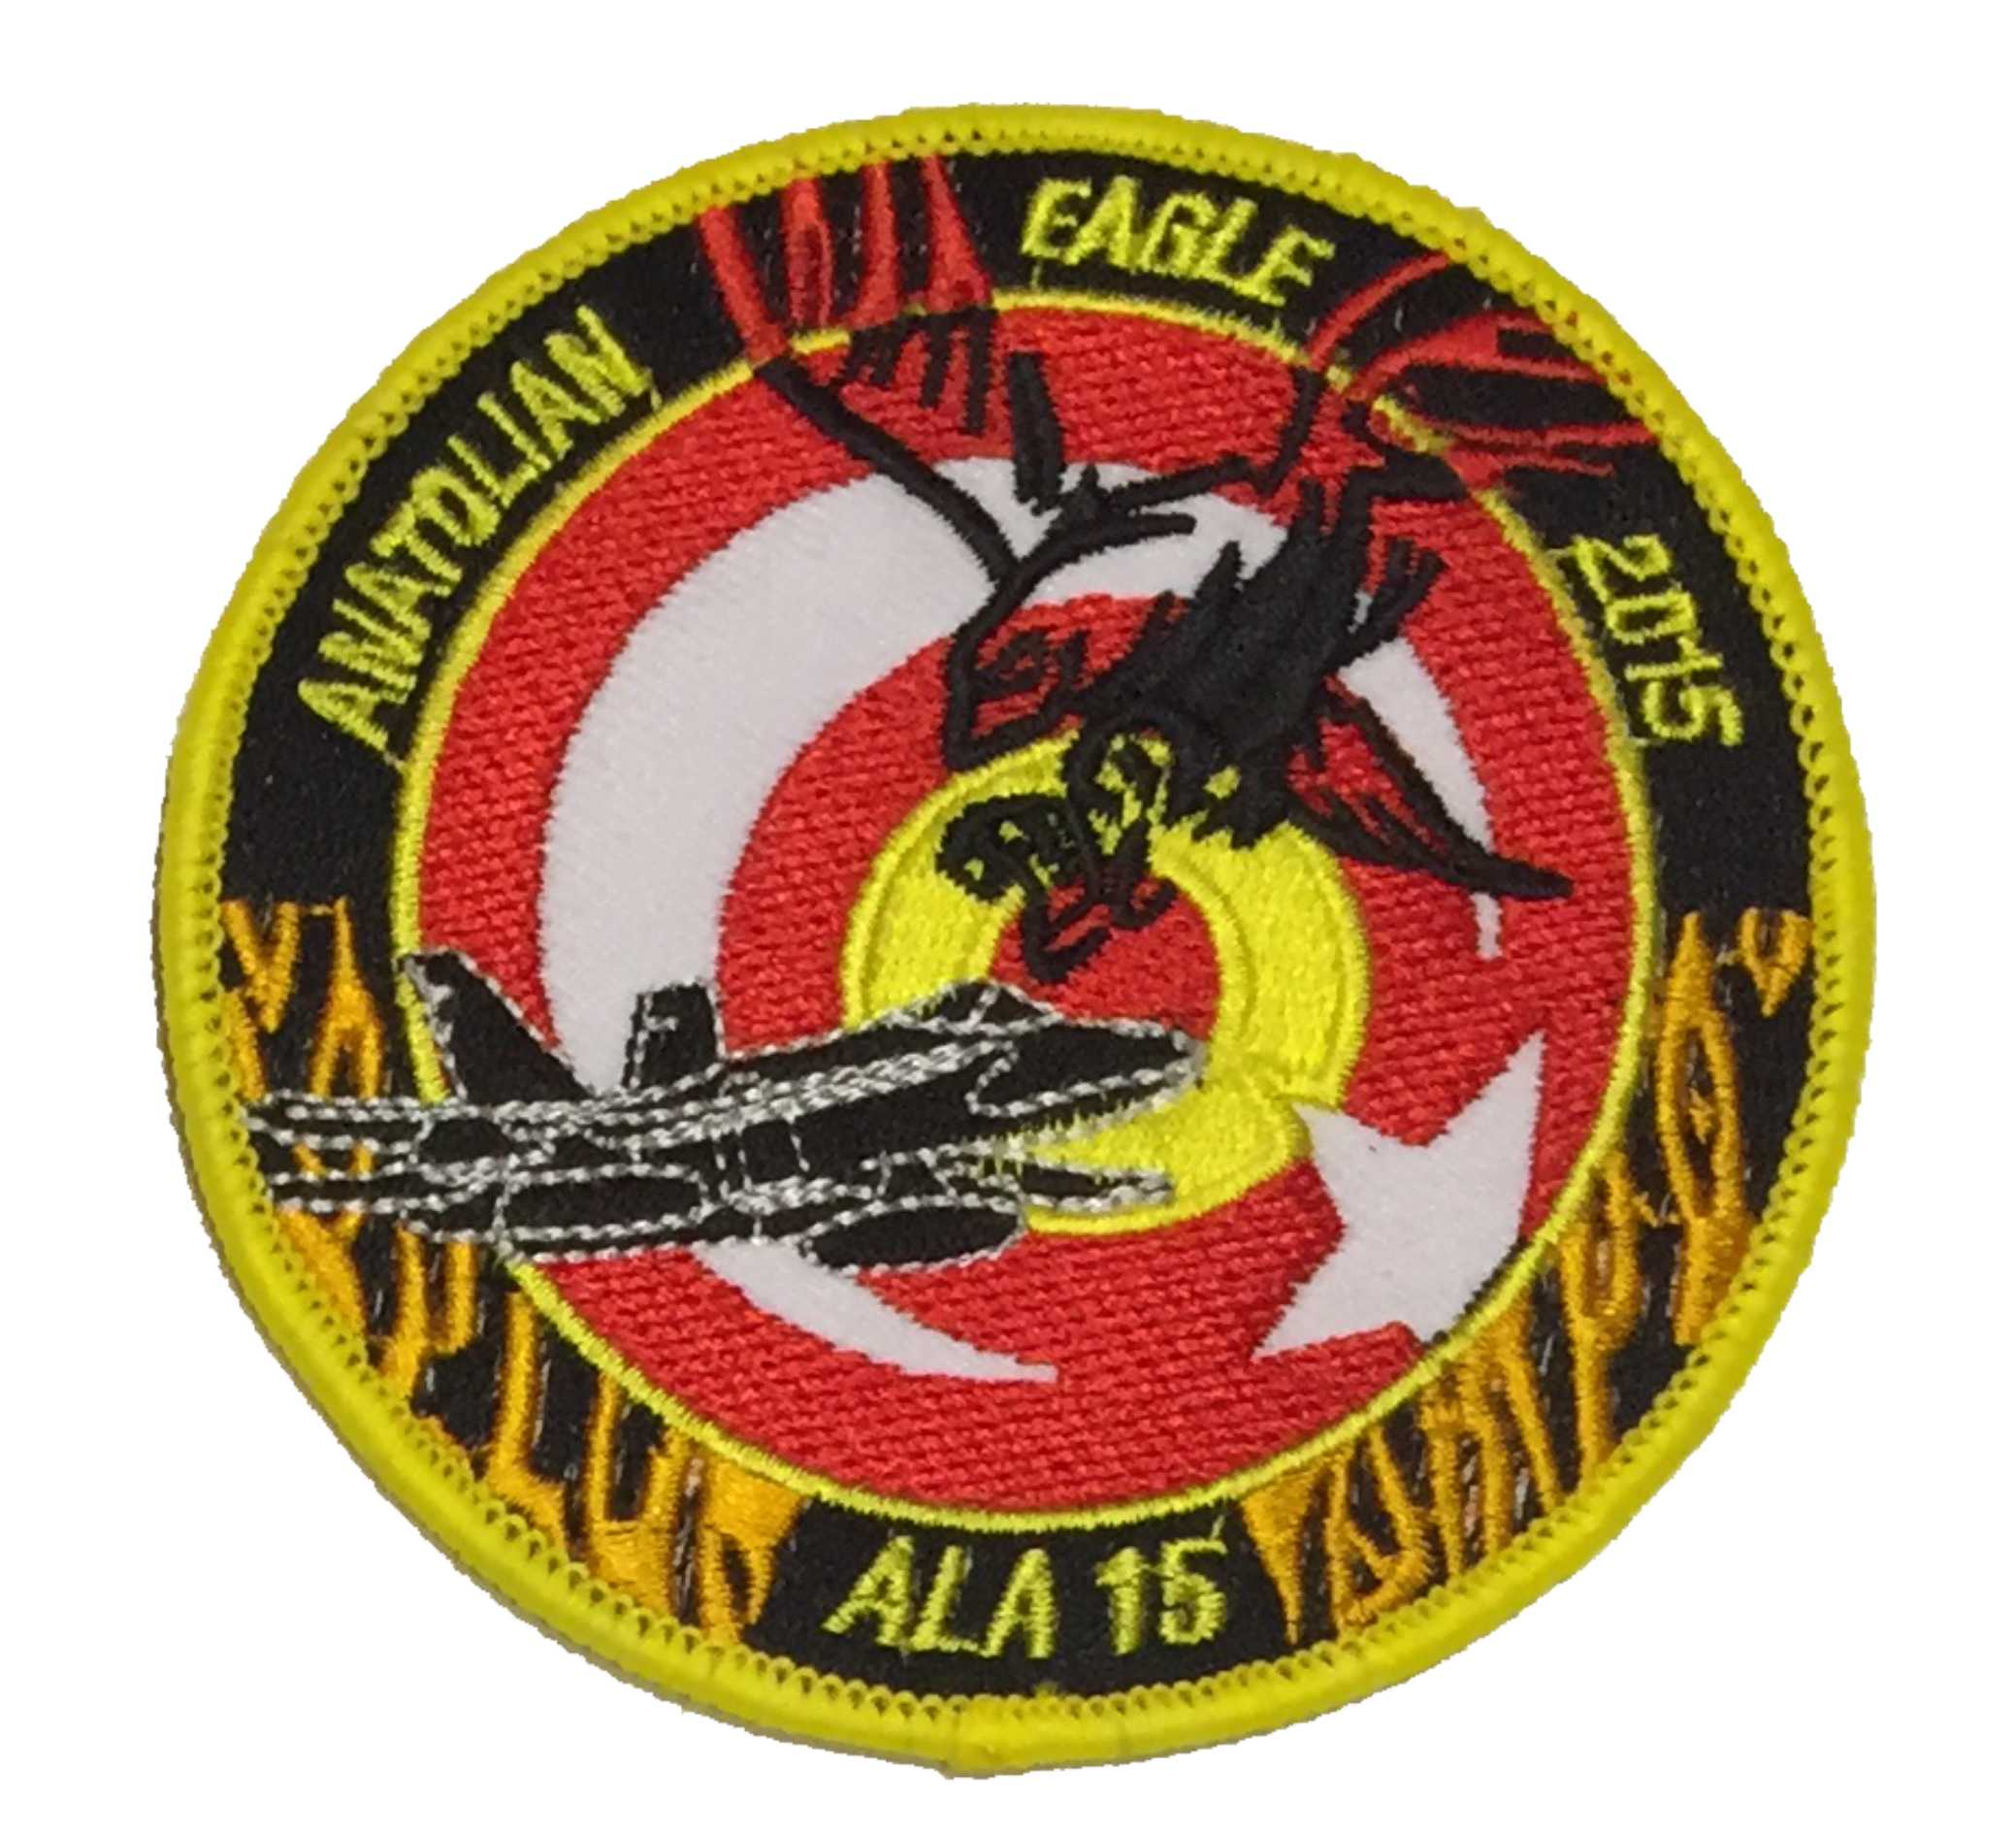 Escudo bordado ALA 15 Anatolian Eagle 2015